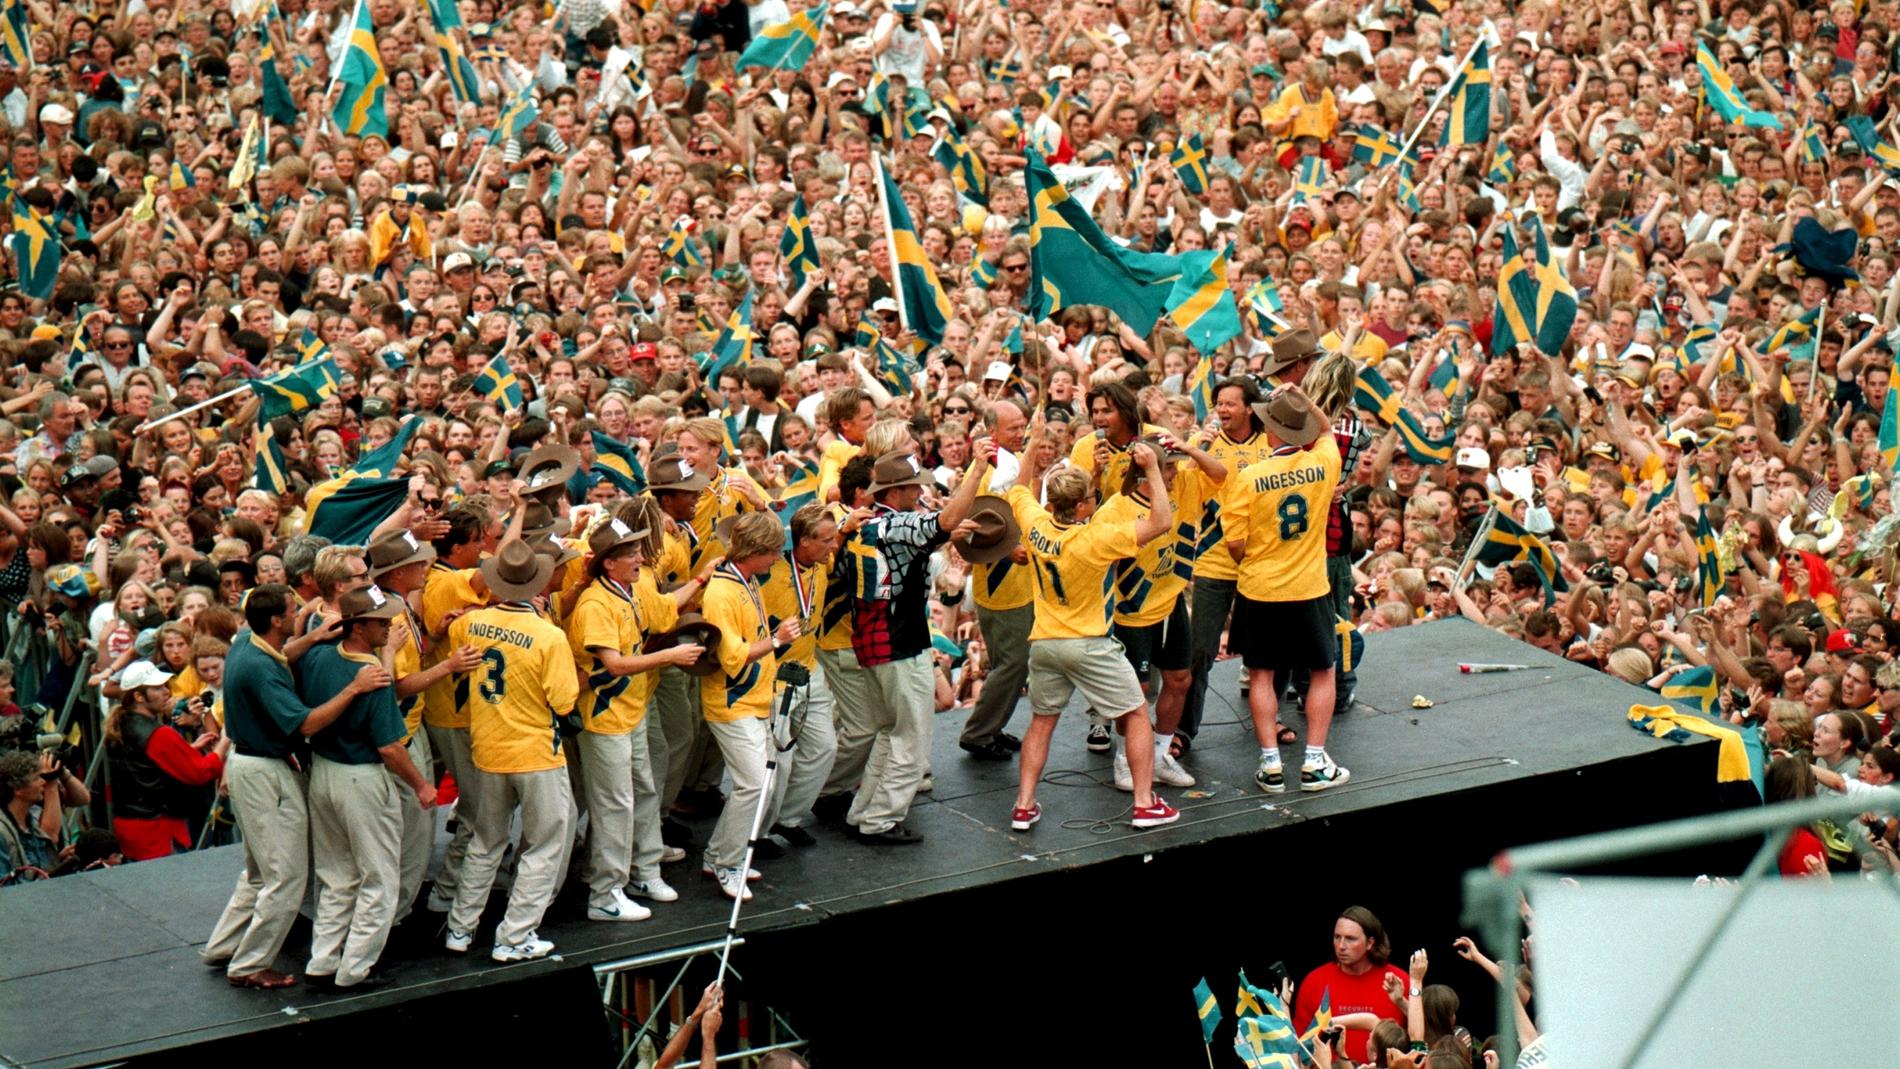 Svenska fotbollslandslaget möttes av närmare 60 000 jublande personer i Rålambshovsparken efter hemkomsten från fotbolls-VM i USA.